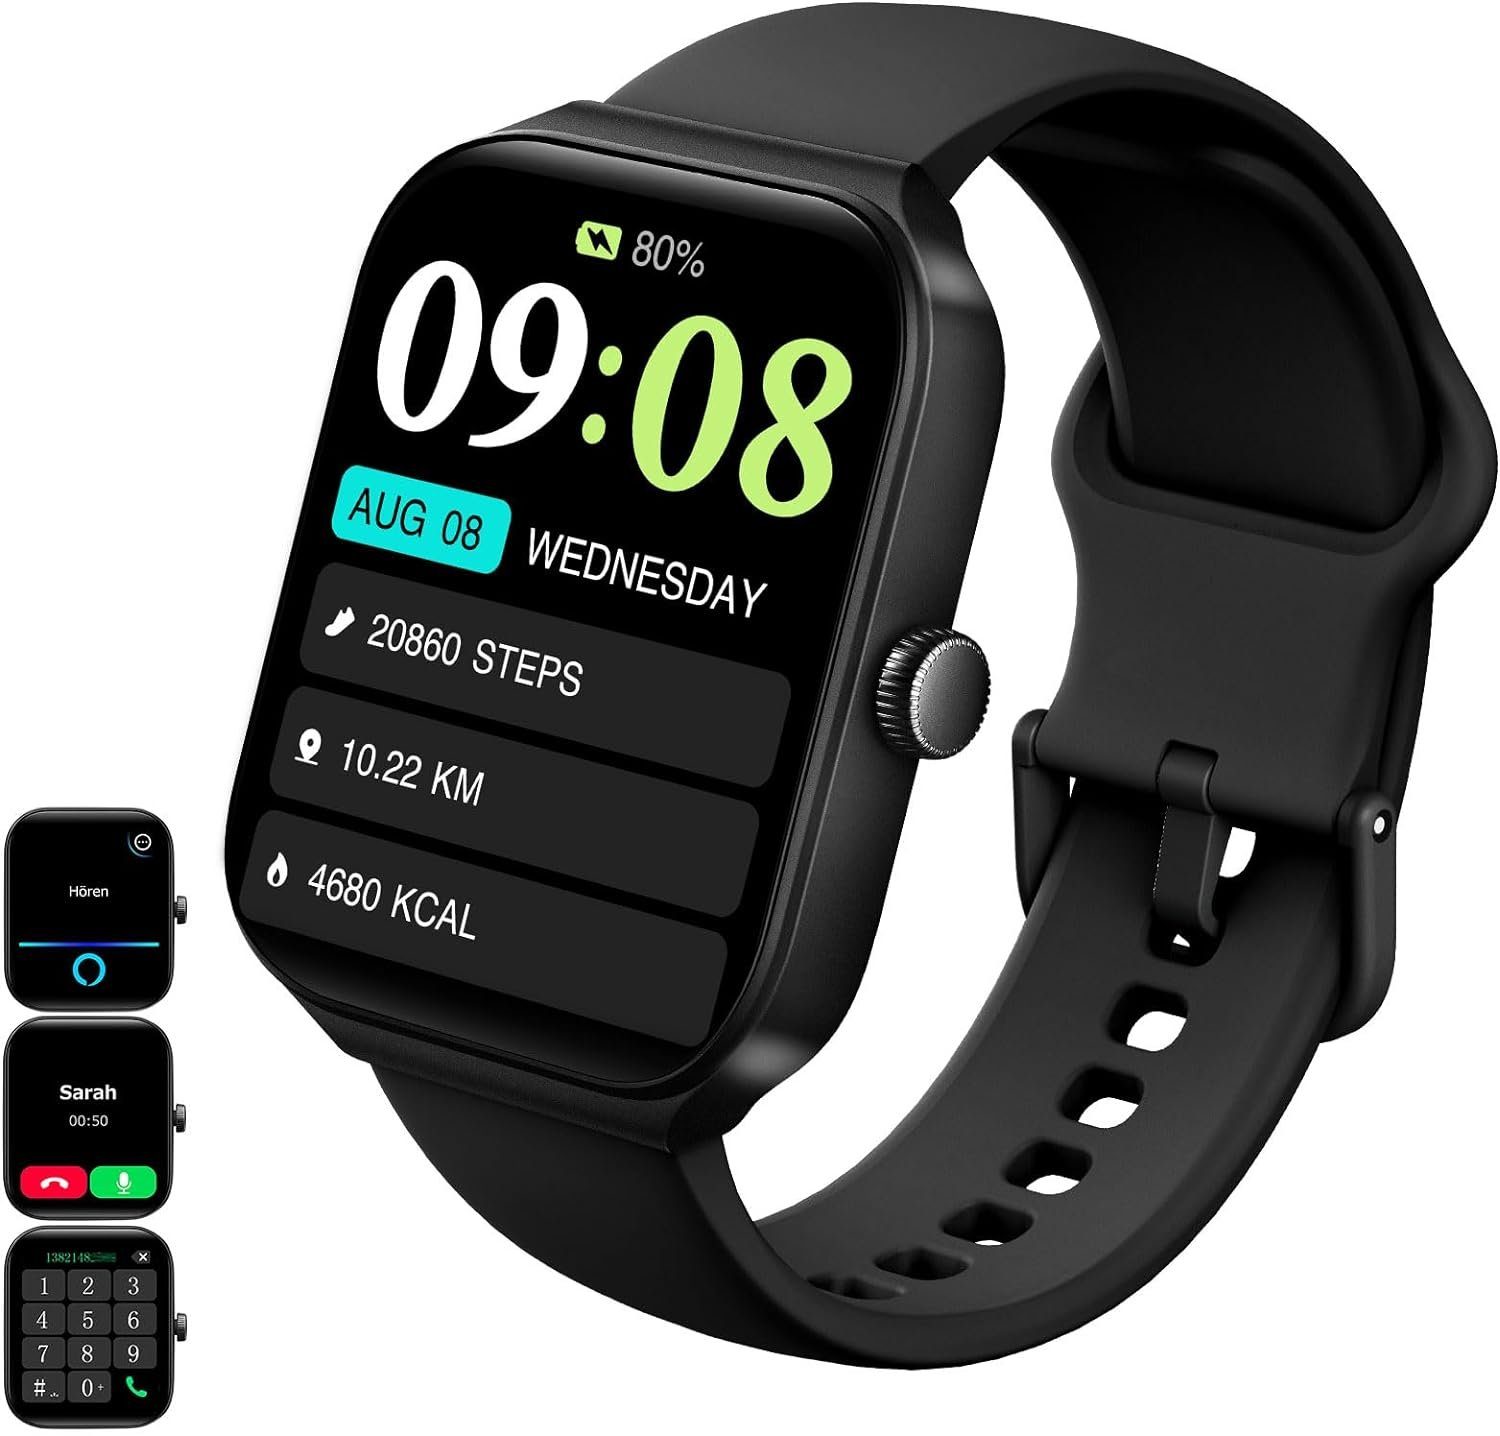 Wanhonghui Fur Herren mit Telefonfunktion Touchscreen Smartwatch (1,95 Zoll, Android iOS), mit Herzfrequenz, SpO2, Schlafmonitor IP68 Wasserdicht Schrittzähler